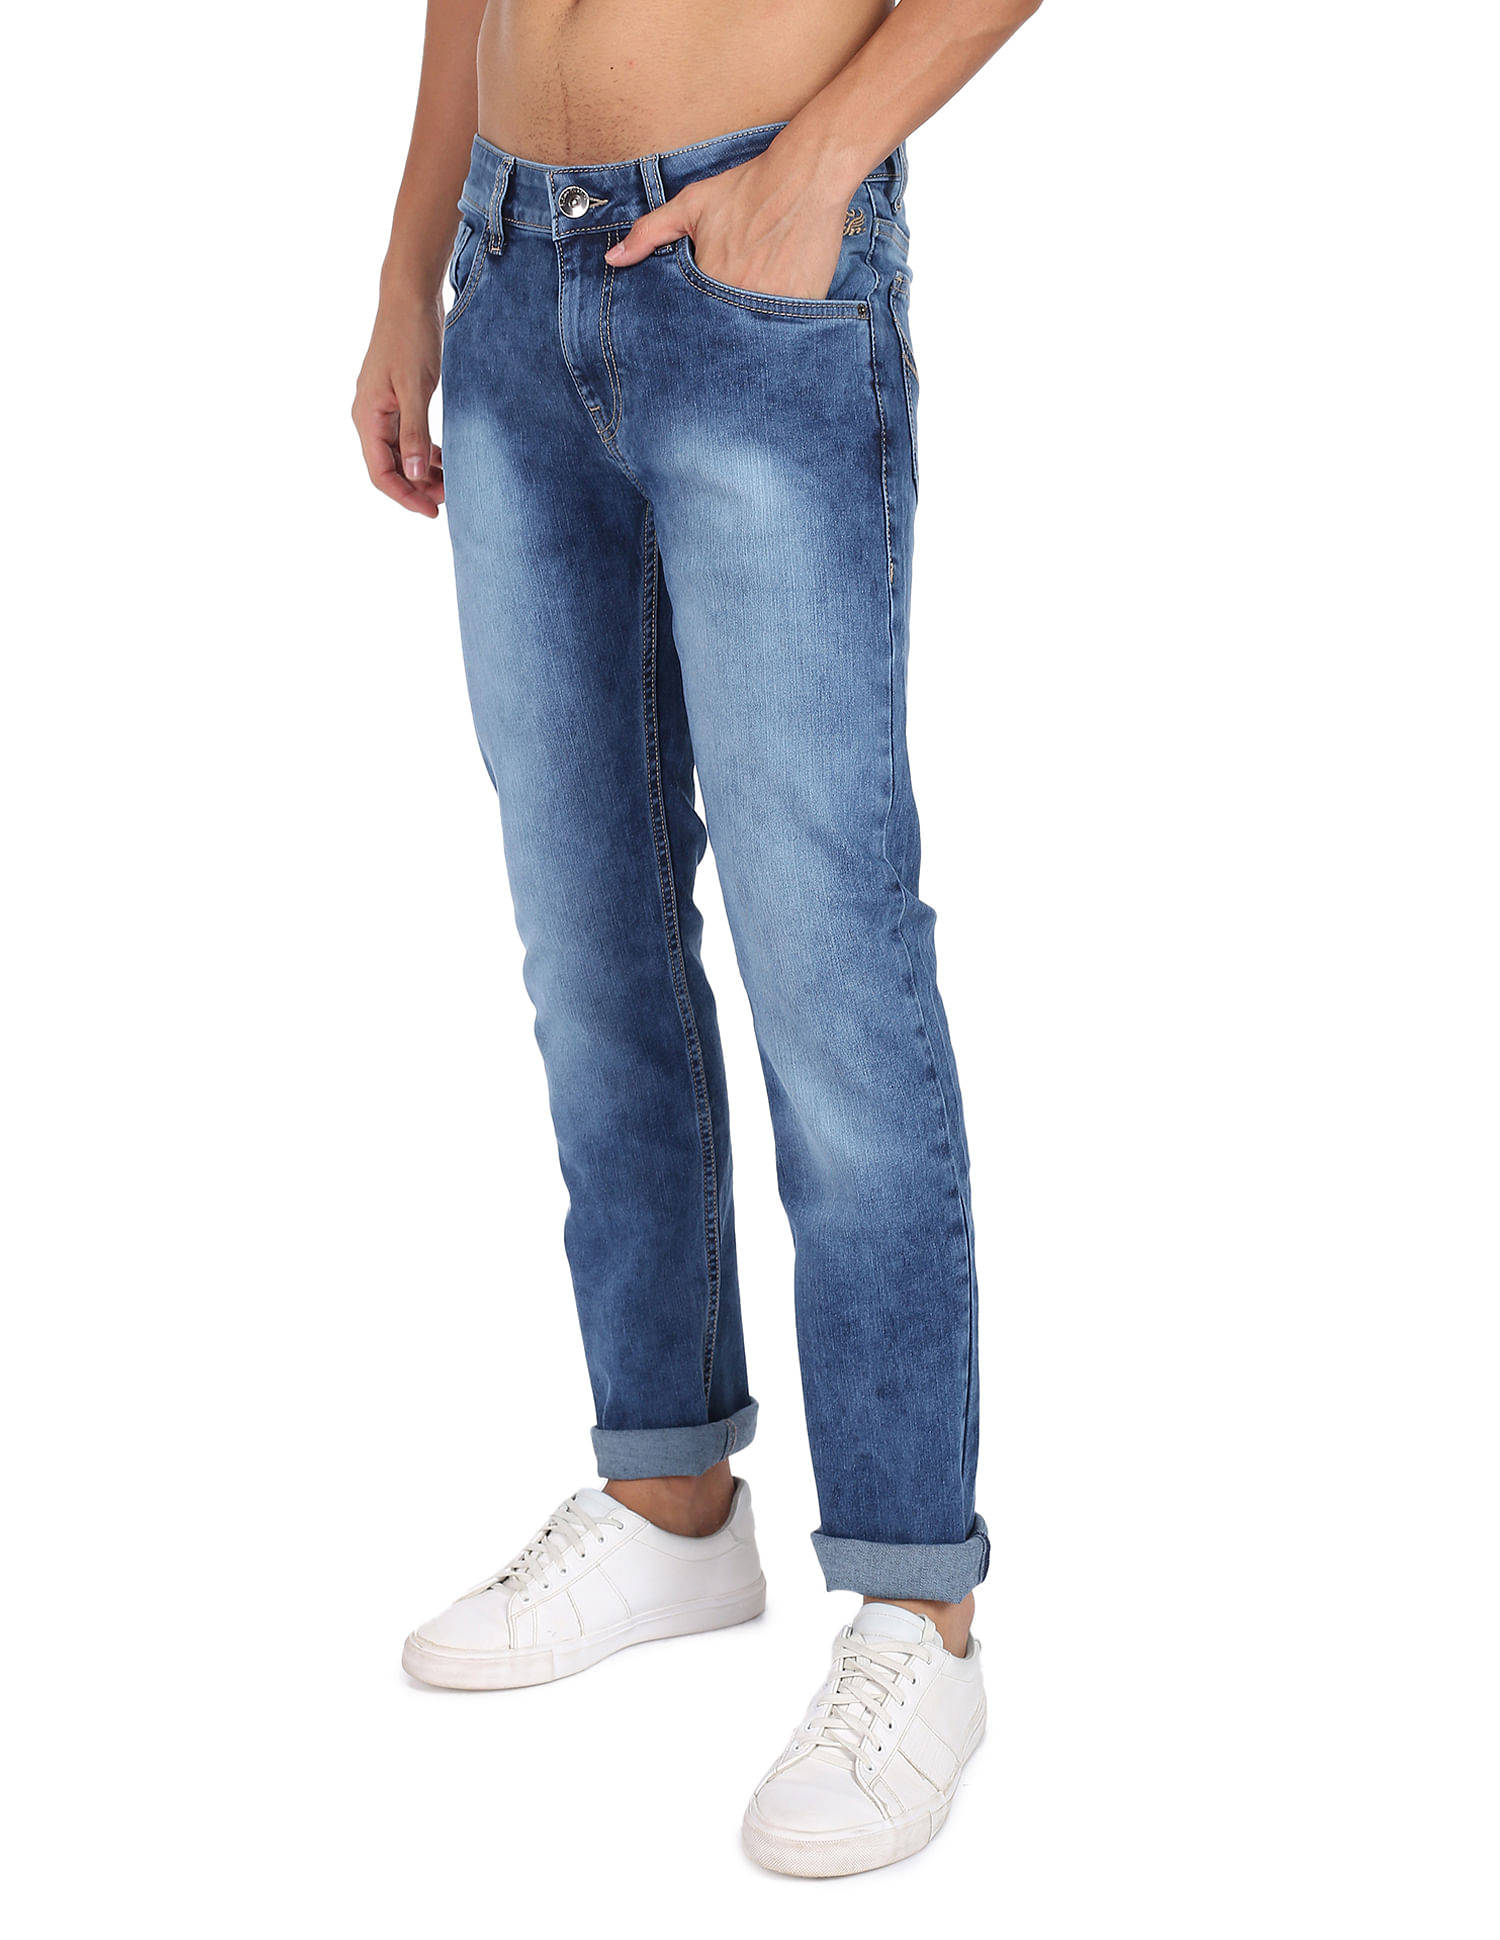 MCR Safety P1D3630 Indigo Blue Cotton Flame Resistant Denim Jeans